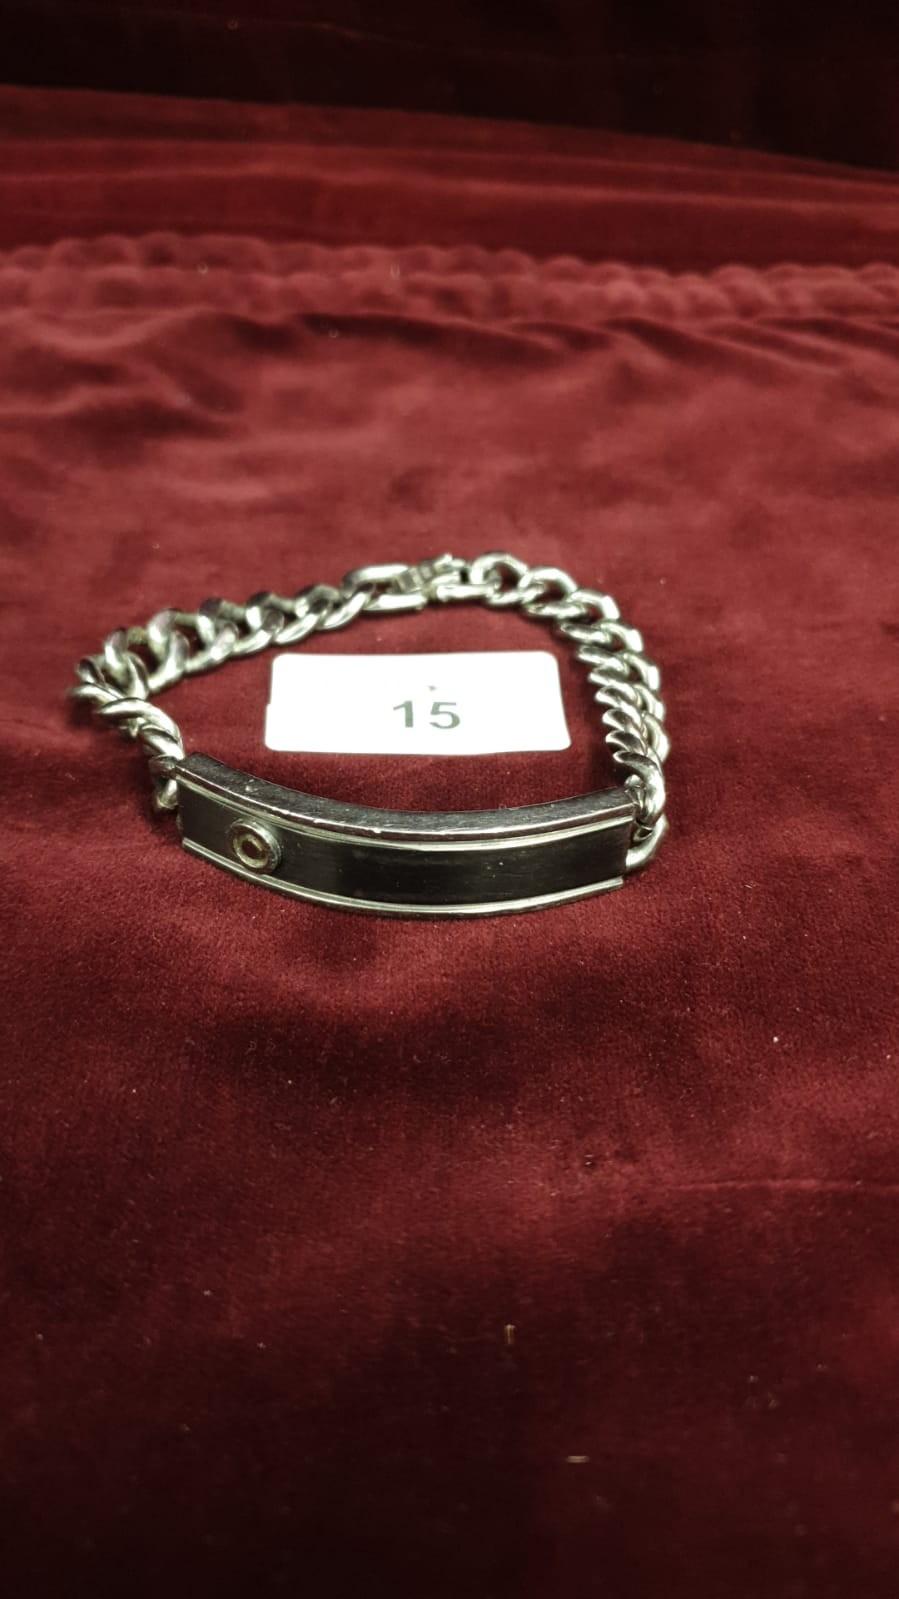 Stainless steel Ben sherman id bracelet.